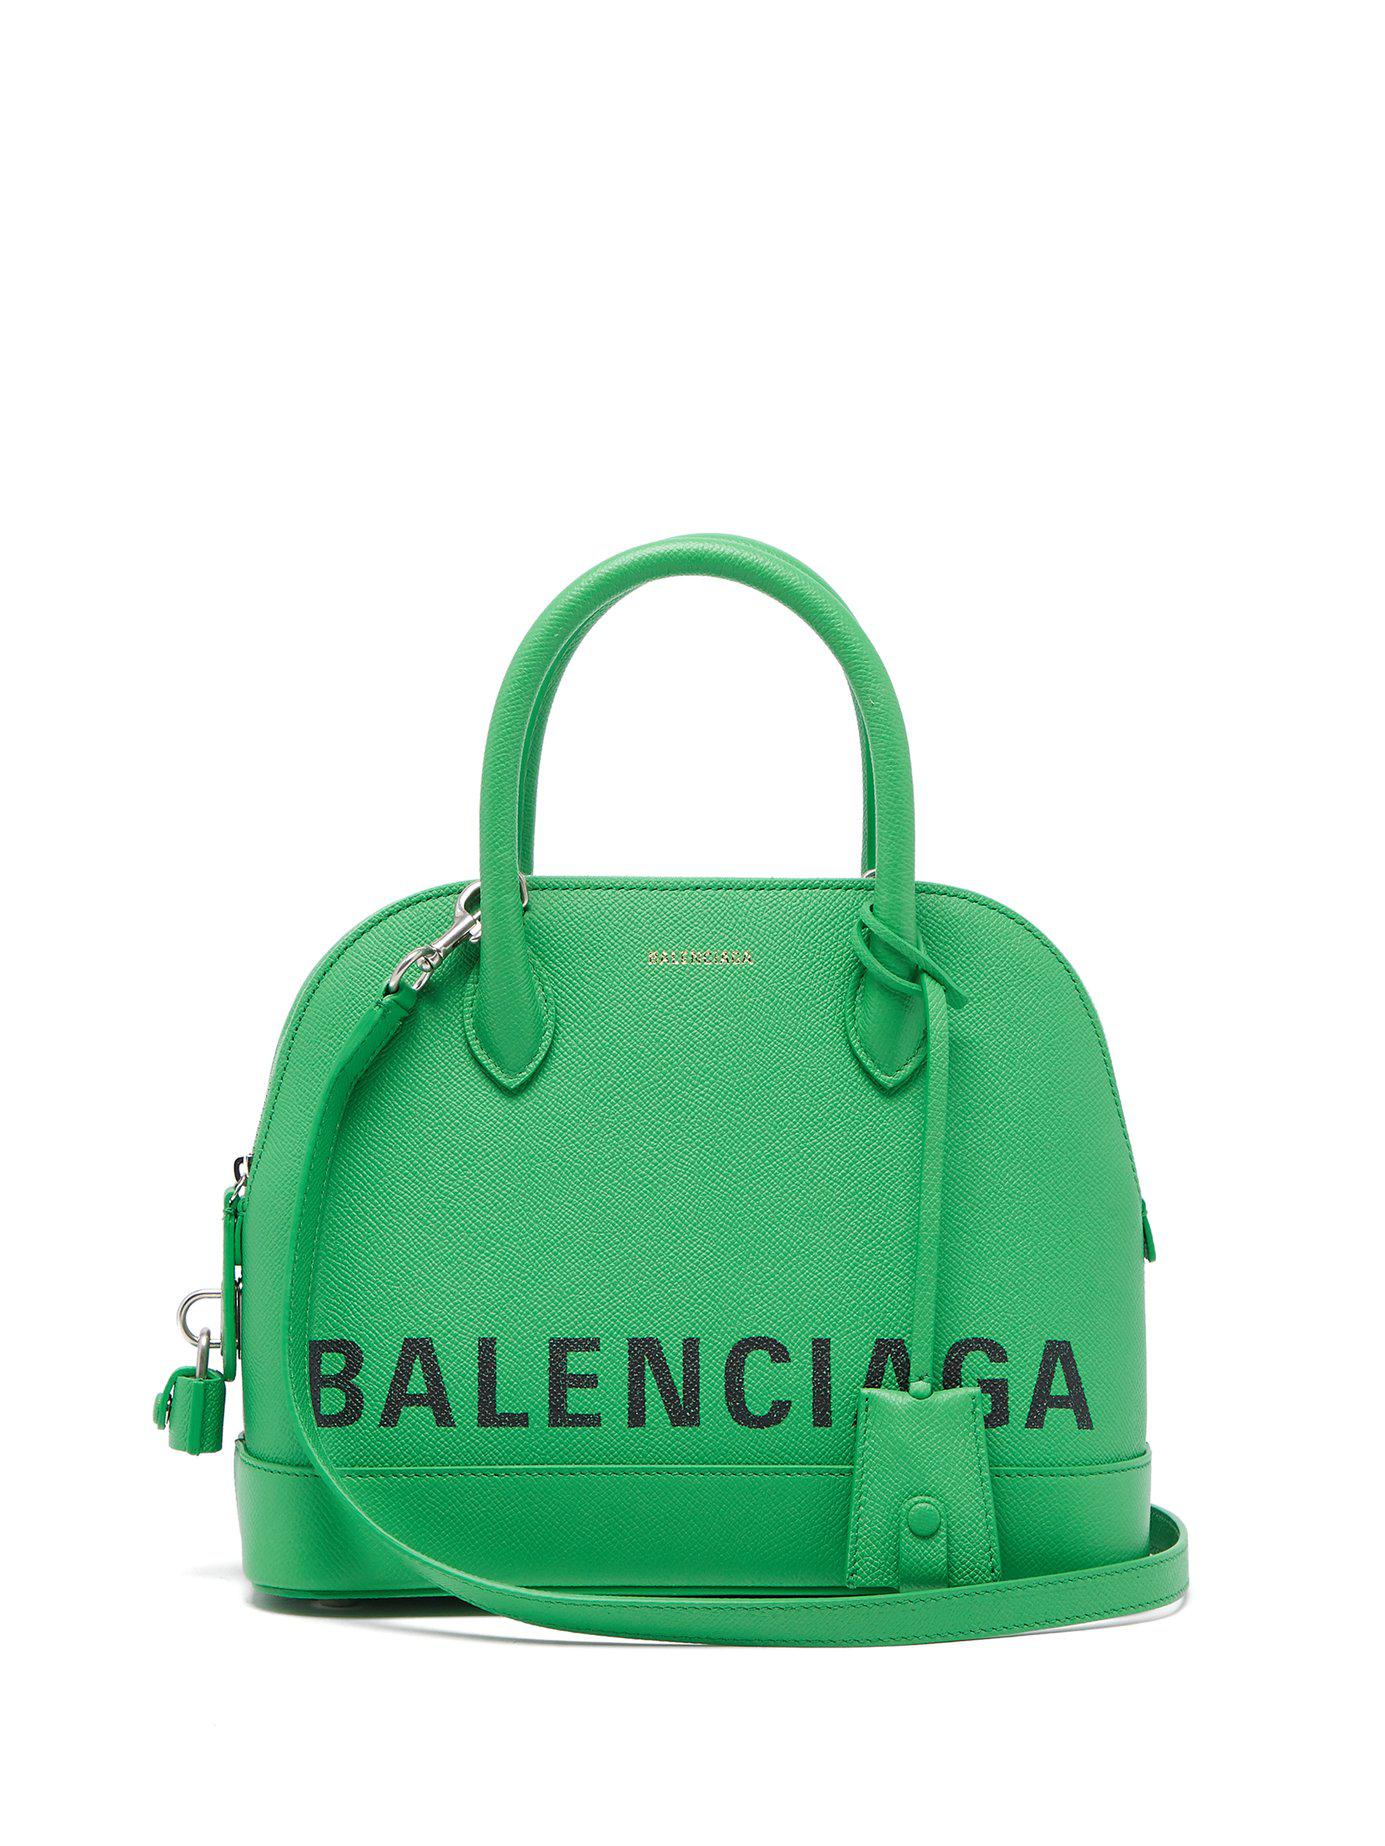 Balenciaga Ville Top Handle S Bag in Green | Lyst